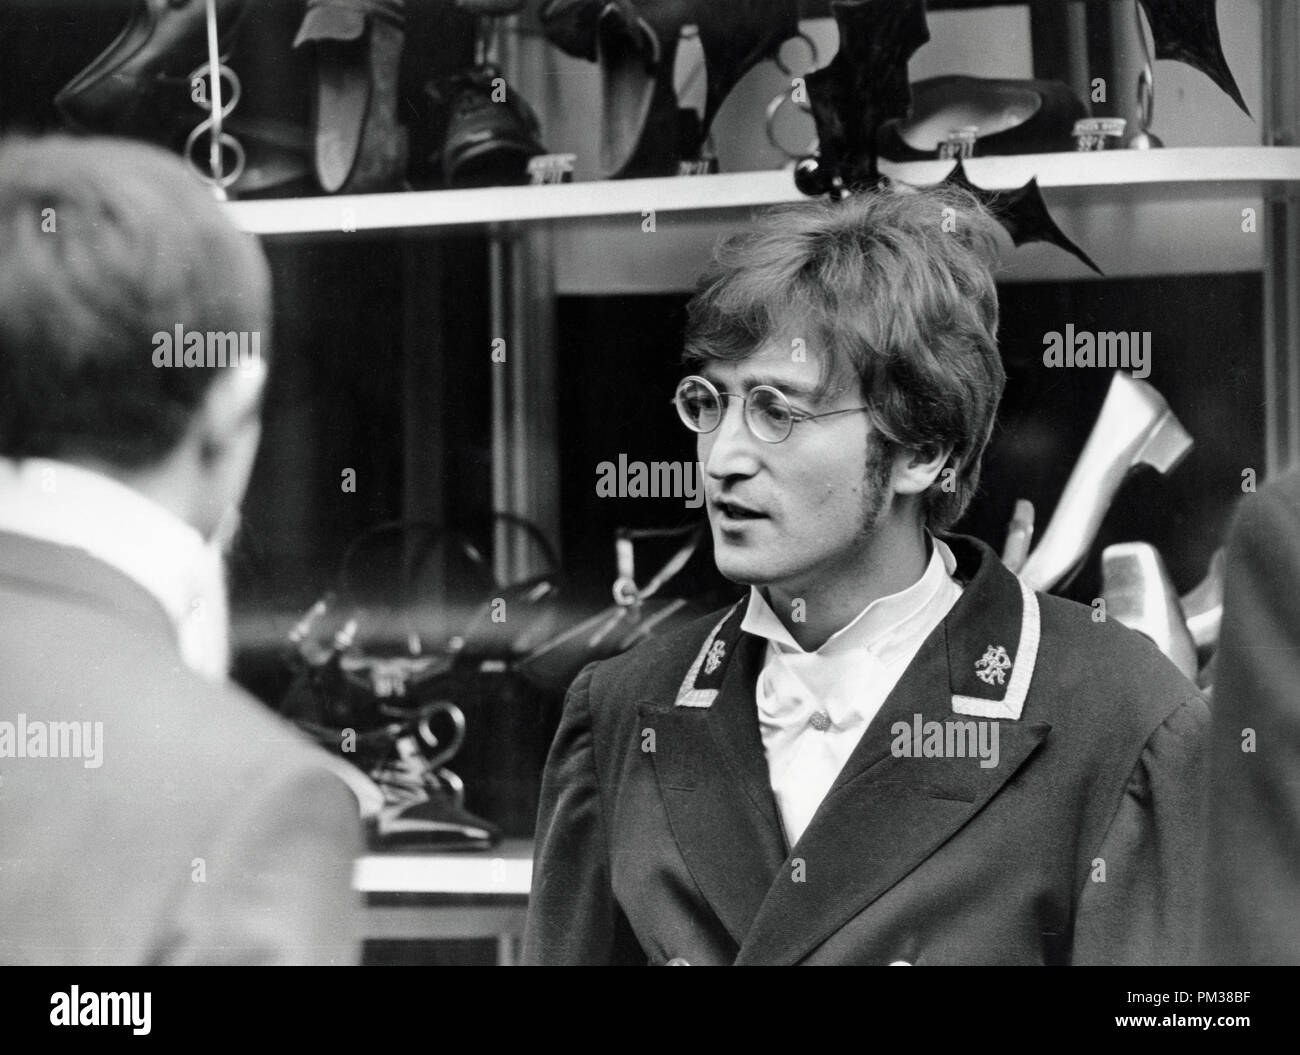 John Lennon le tournage d'une émission de télévision pour la BBC, le 27 novembre 1966. Référence de fichier #  1193 004THA © CCR /Le Hollywood Archive - Tous droits réservés Banque D'Images